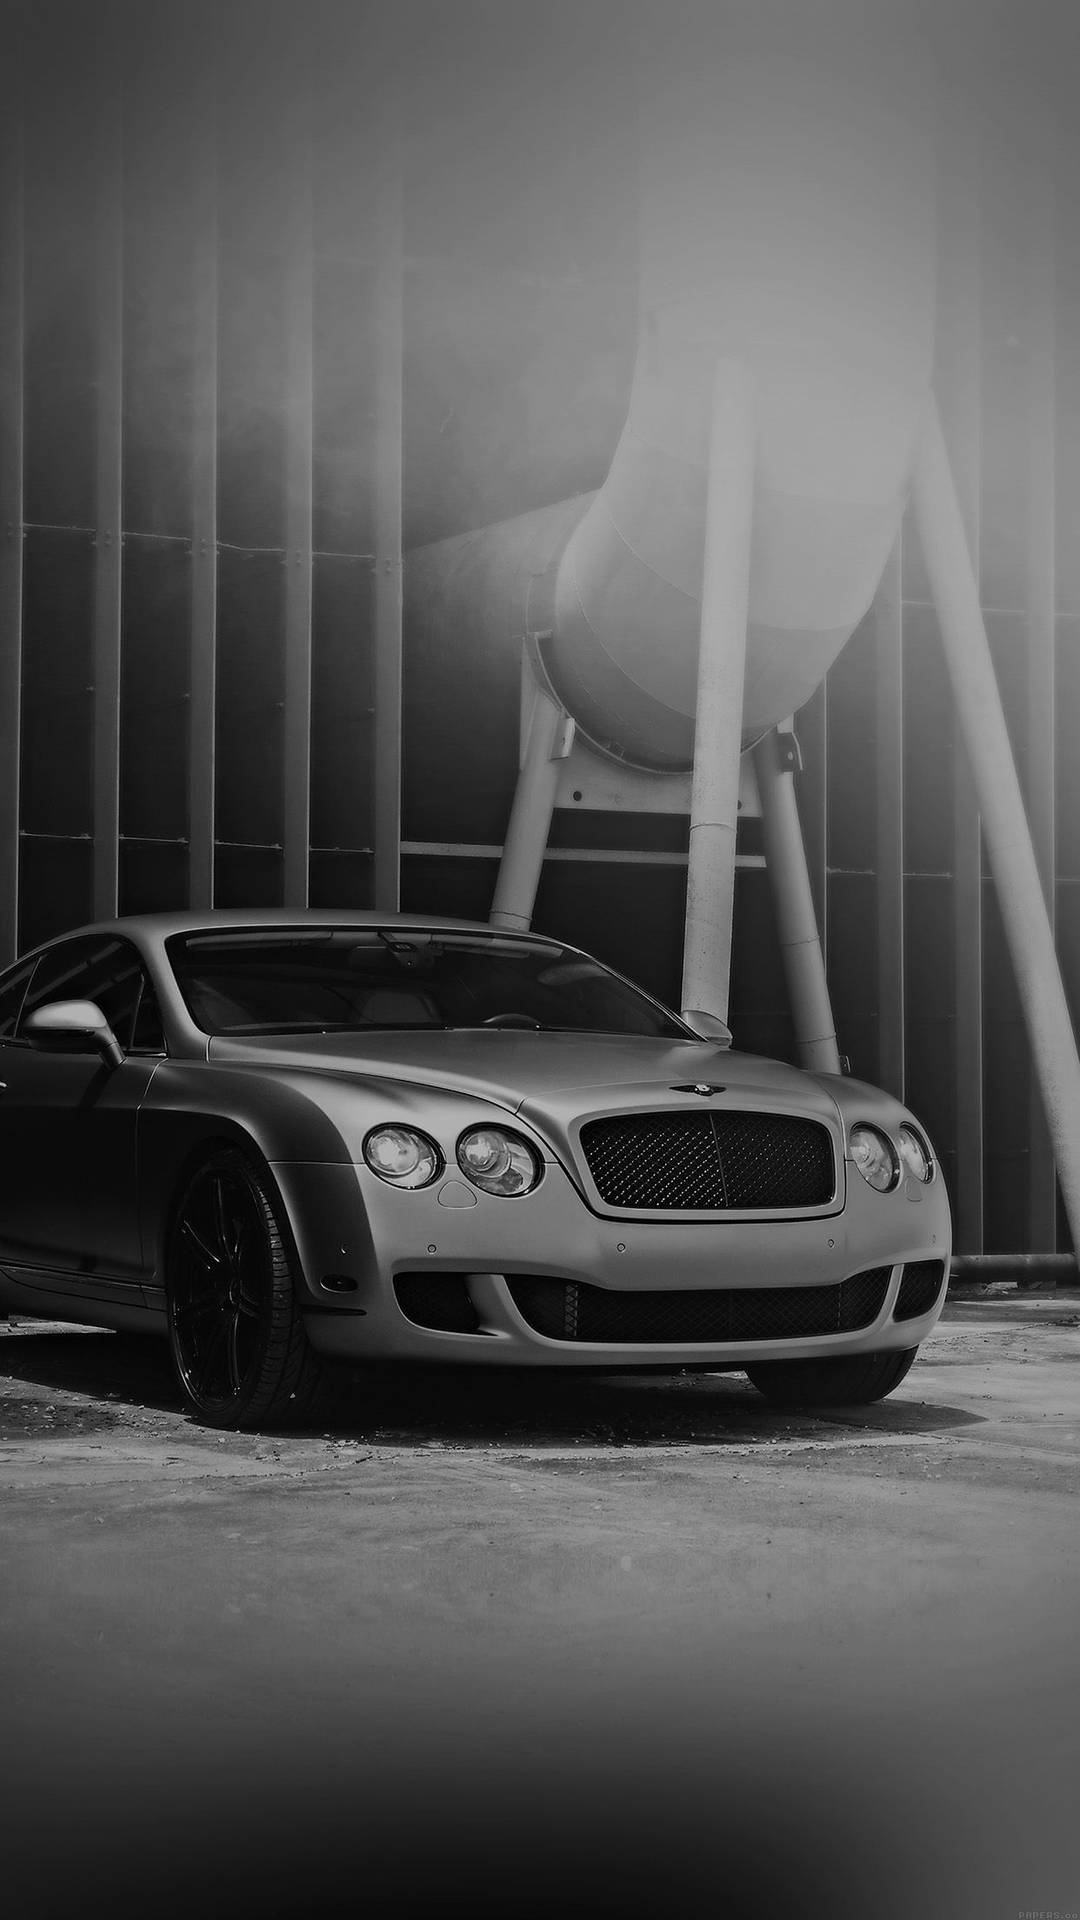 Greyscale Bentley Iphone Background